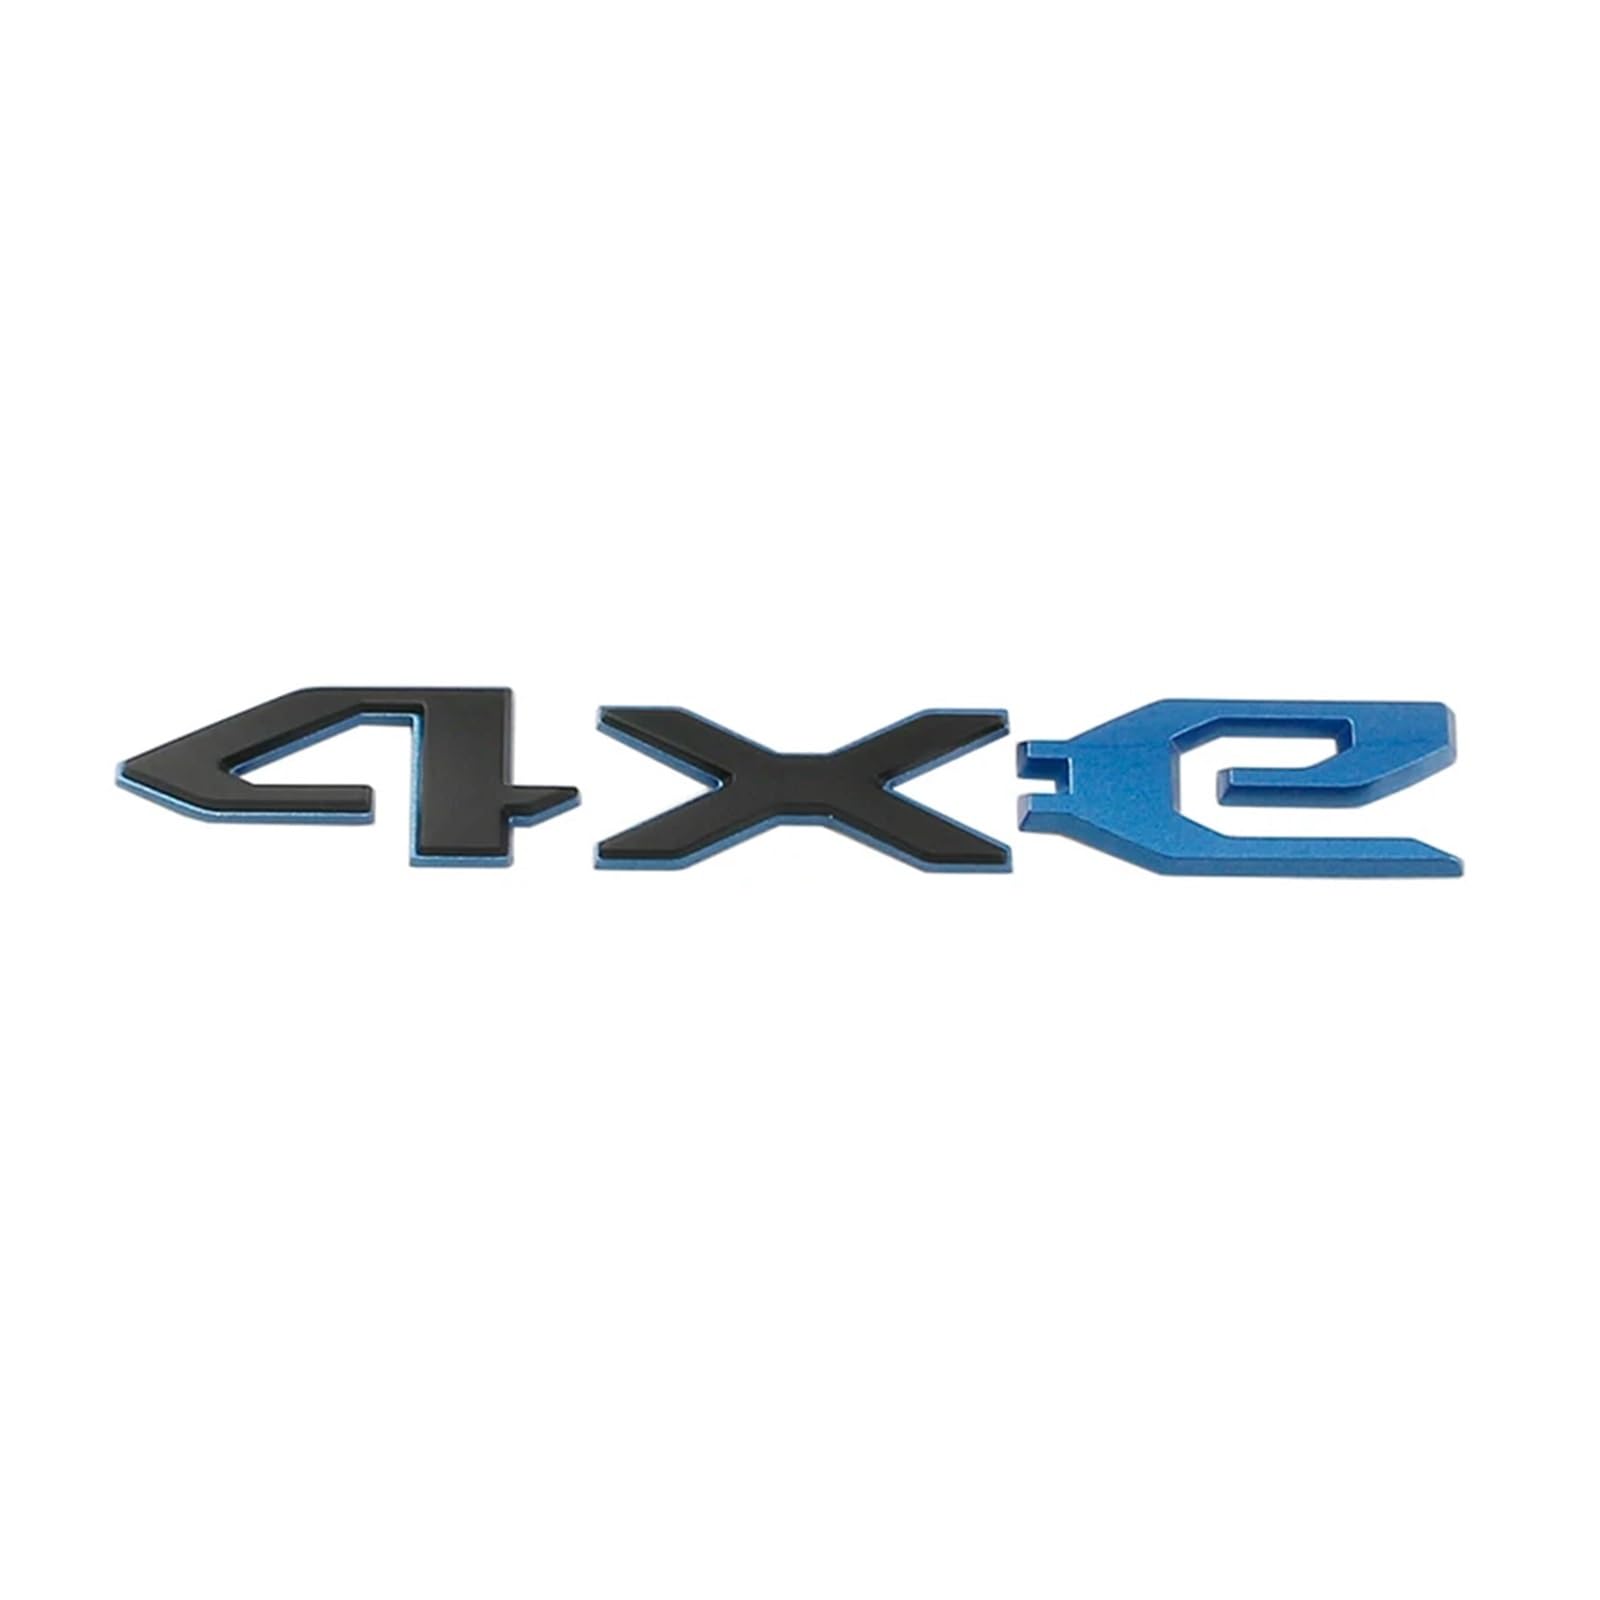 AQXYWQOL Auto 4xe Logo Seite Kotflügel Kofferraum Abzeichen Emblem Aufkleber Aufkleber Kompatibel mit Wrangler Grand Cherokee Compass Renegade Styling Zubehör Farbe ist konstant, verblasst nicht und b von AQXYWQOL